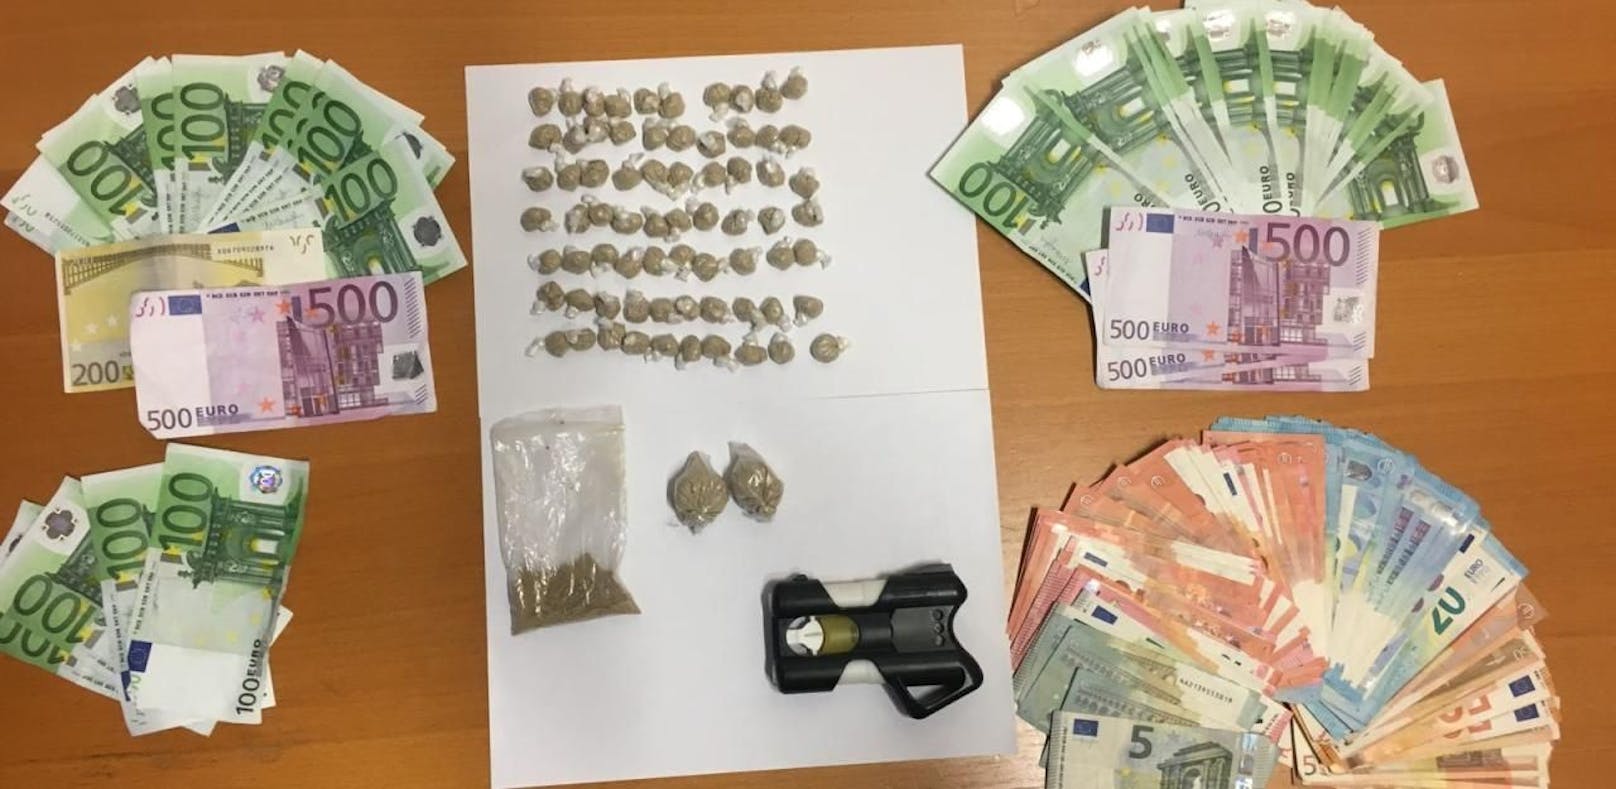 Die Polizei stellte Drogen und Bargeld sicher